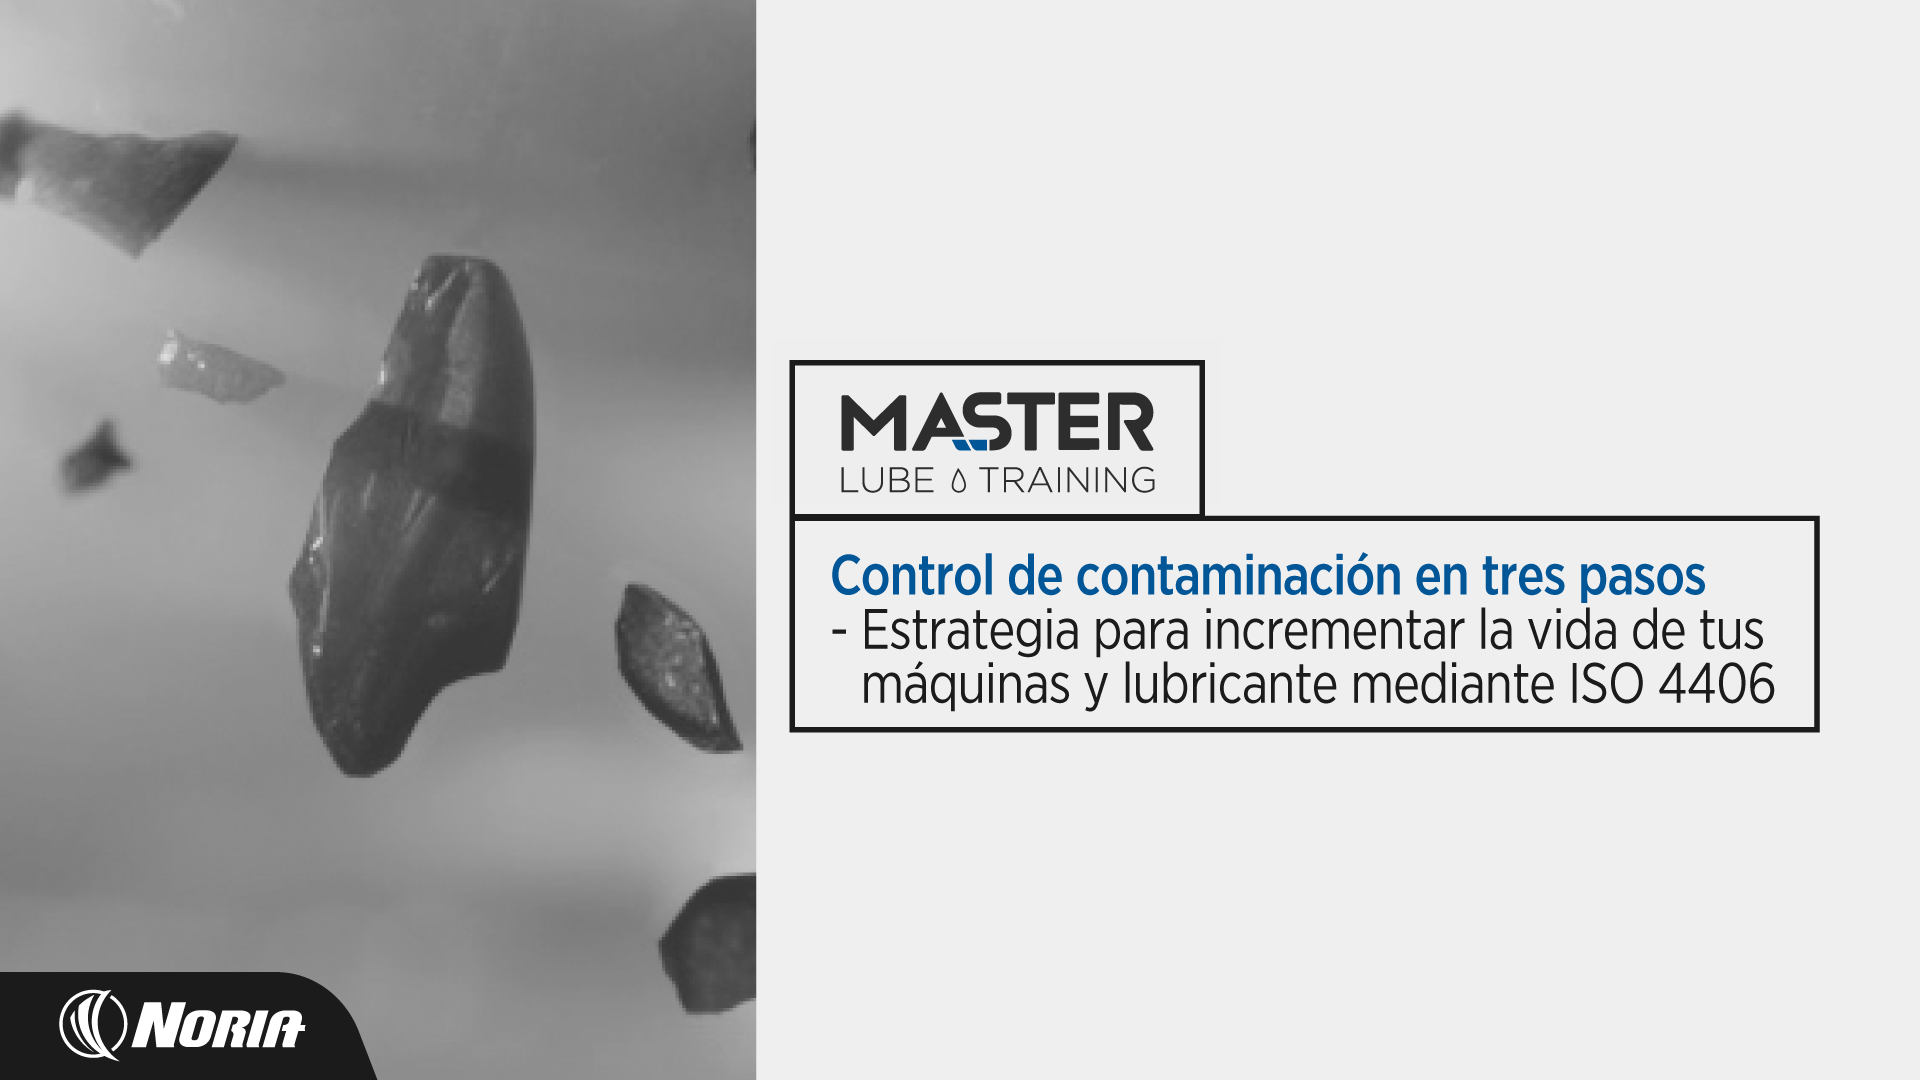 Course Image Master Lube Training: Control de contaminación en tres pasos - Estrategia para incrementar la vida de tus máquinas y lubricante mediante ISO 4406